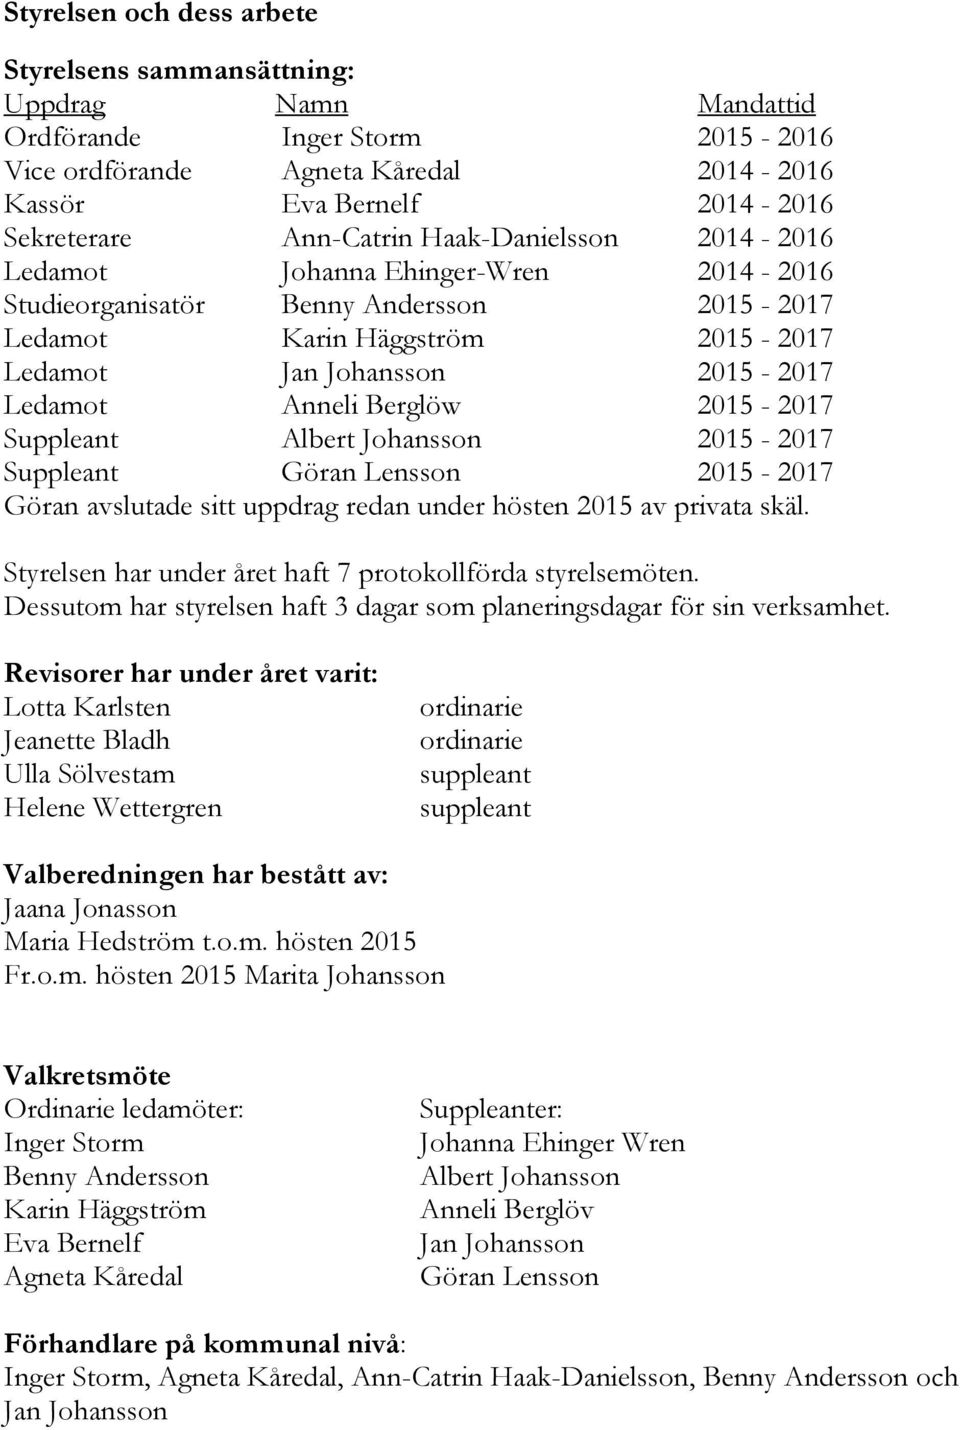 Anneli Berglöw 2015-2017 Suppleant Albert Johansson 2015-2017 Suppleant Göran Lensson 2015-2017 Göran avslutade sitt uppdrag redan under hösten 2015 av privata skäl.